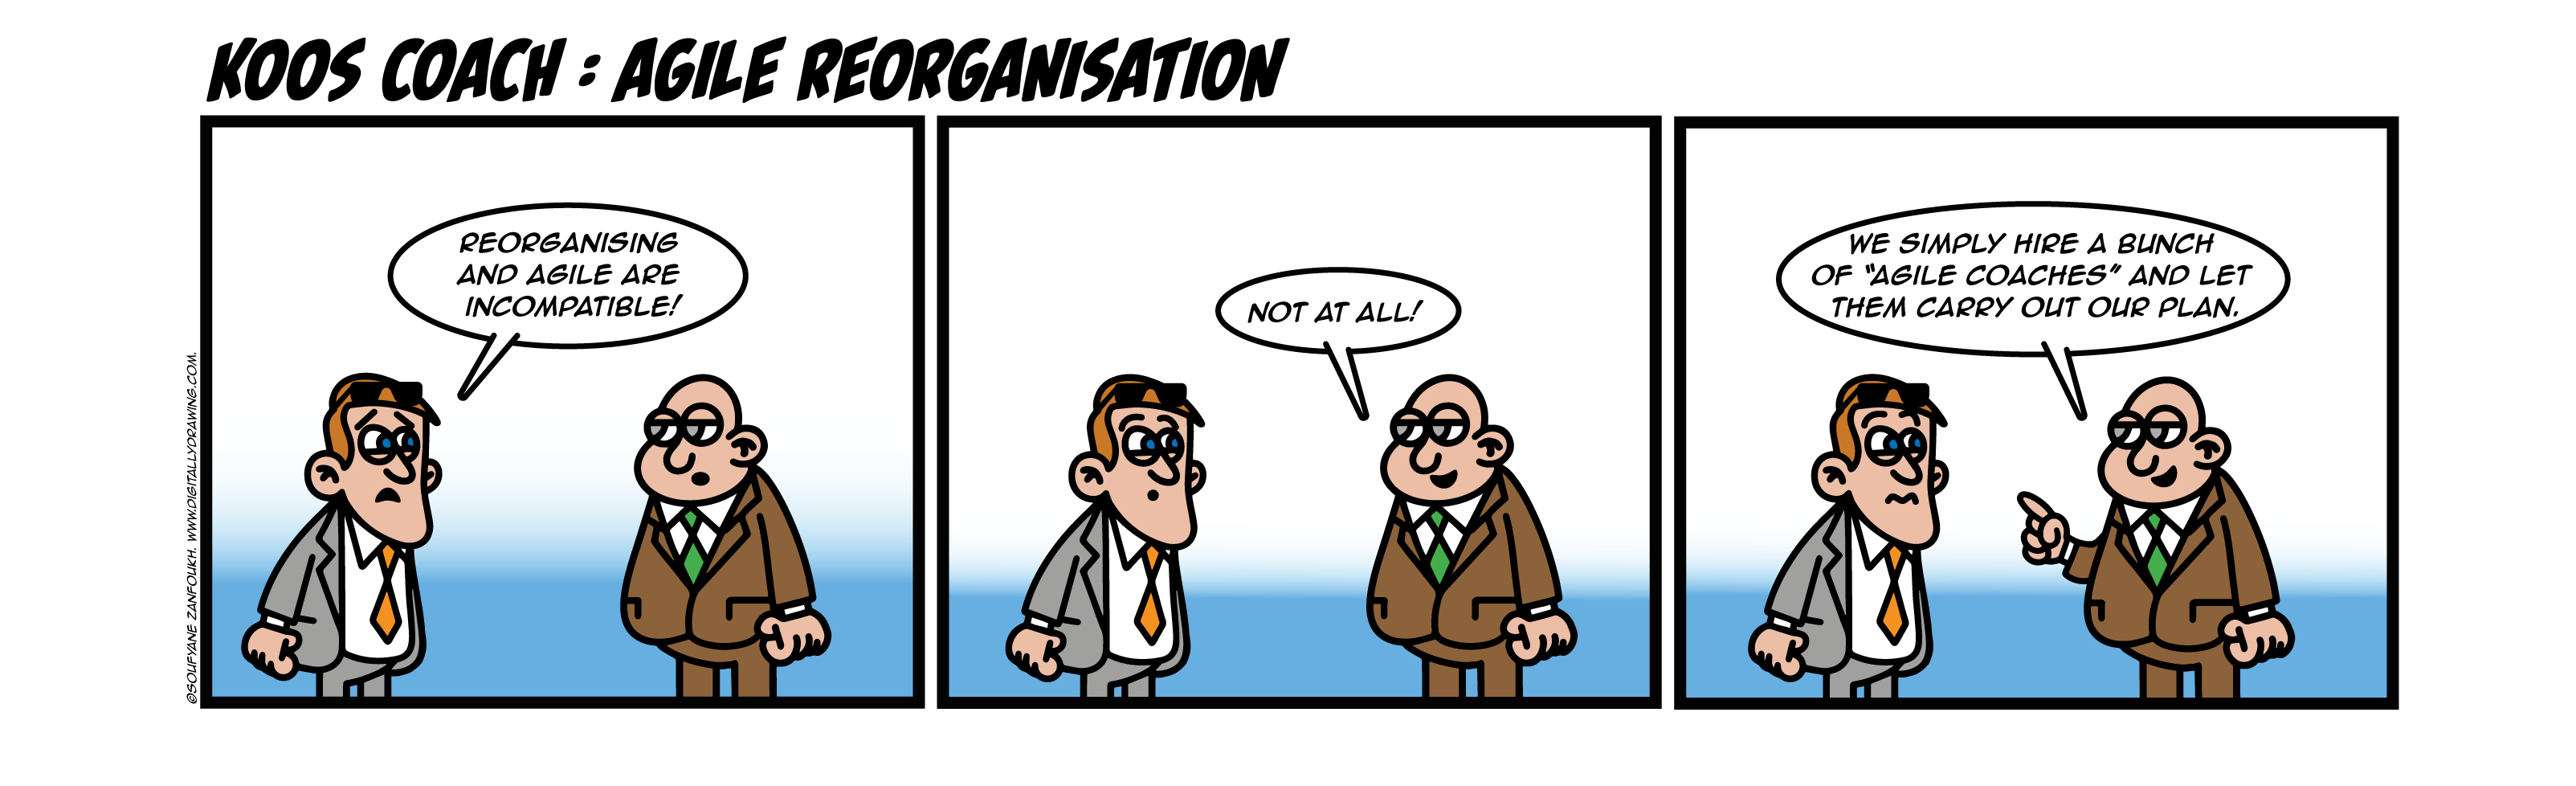 Agile reorganisation